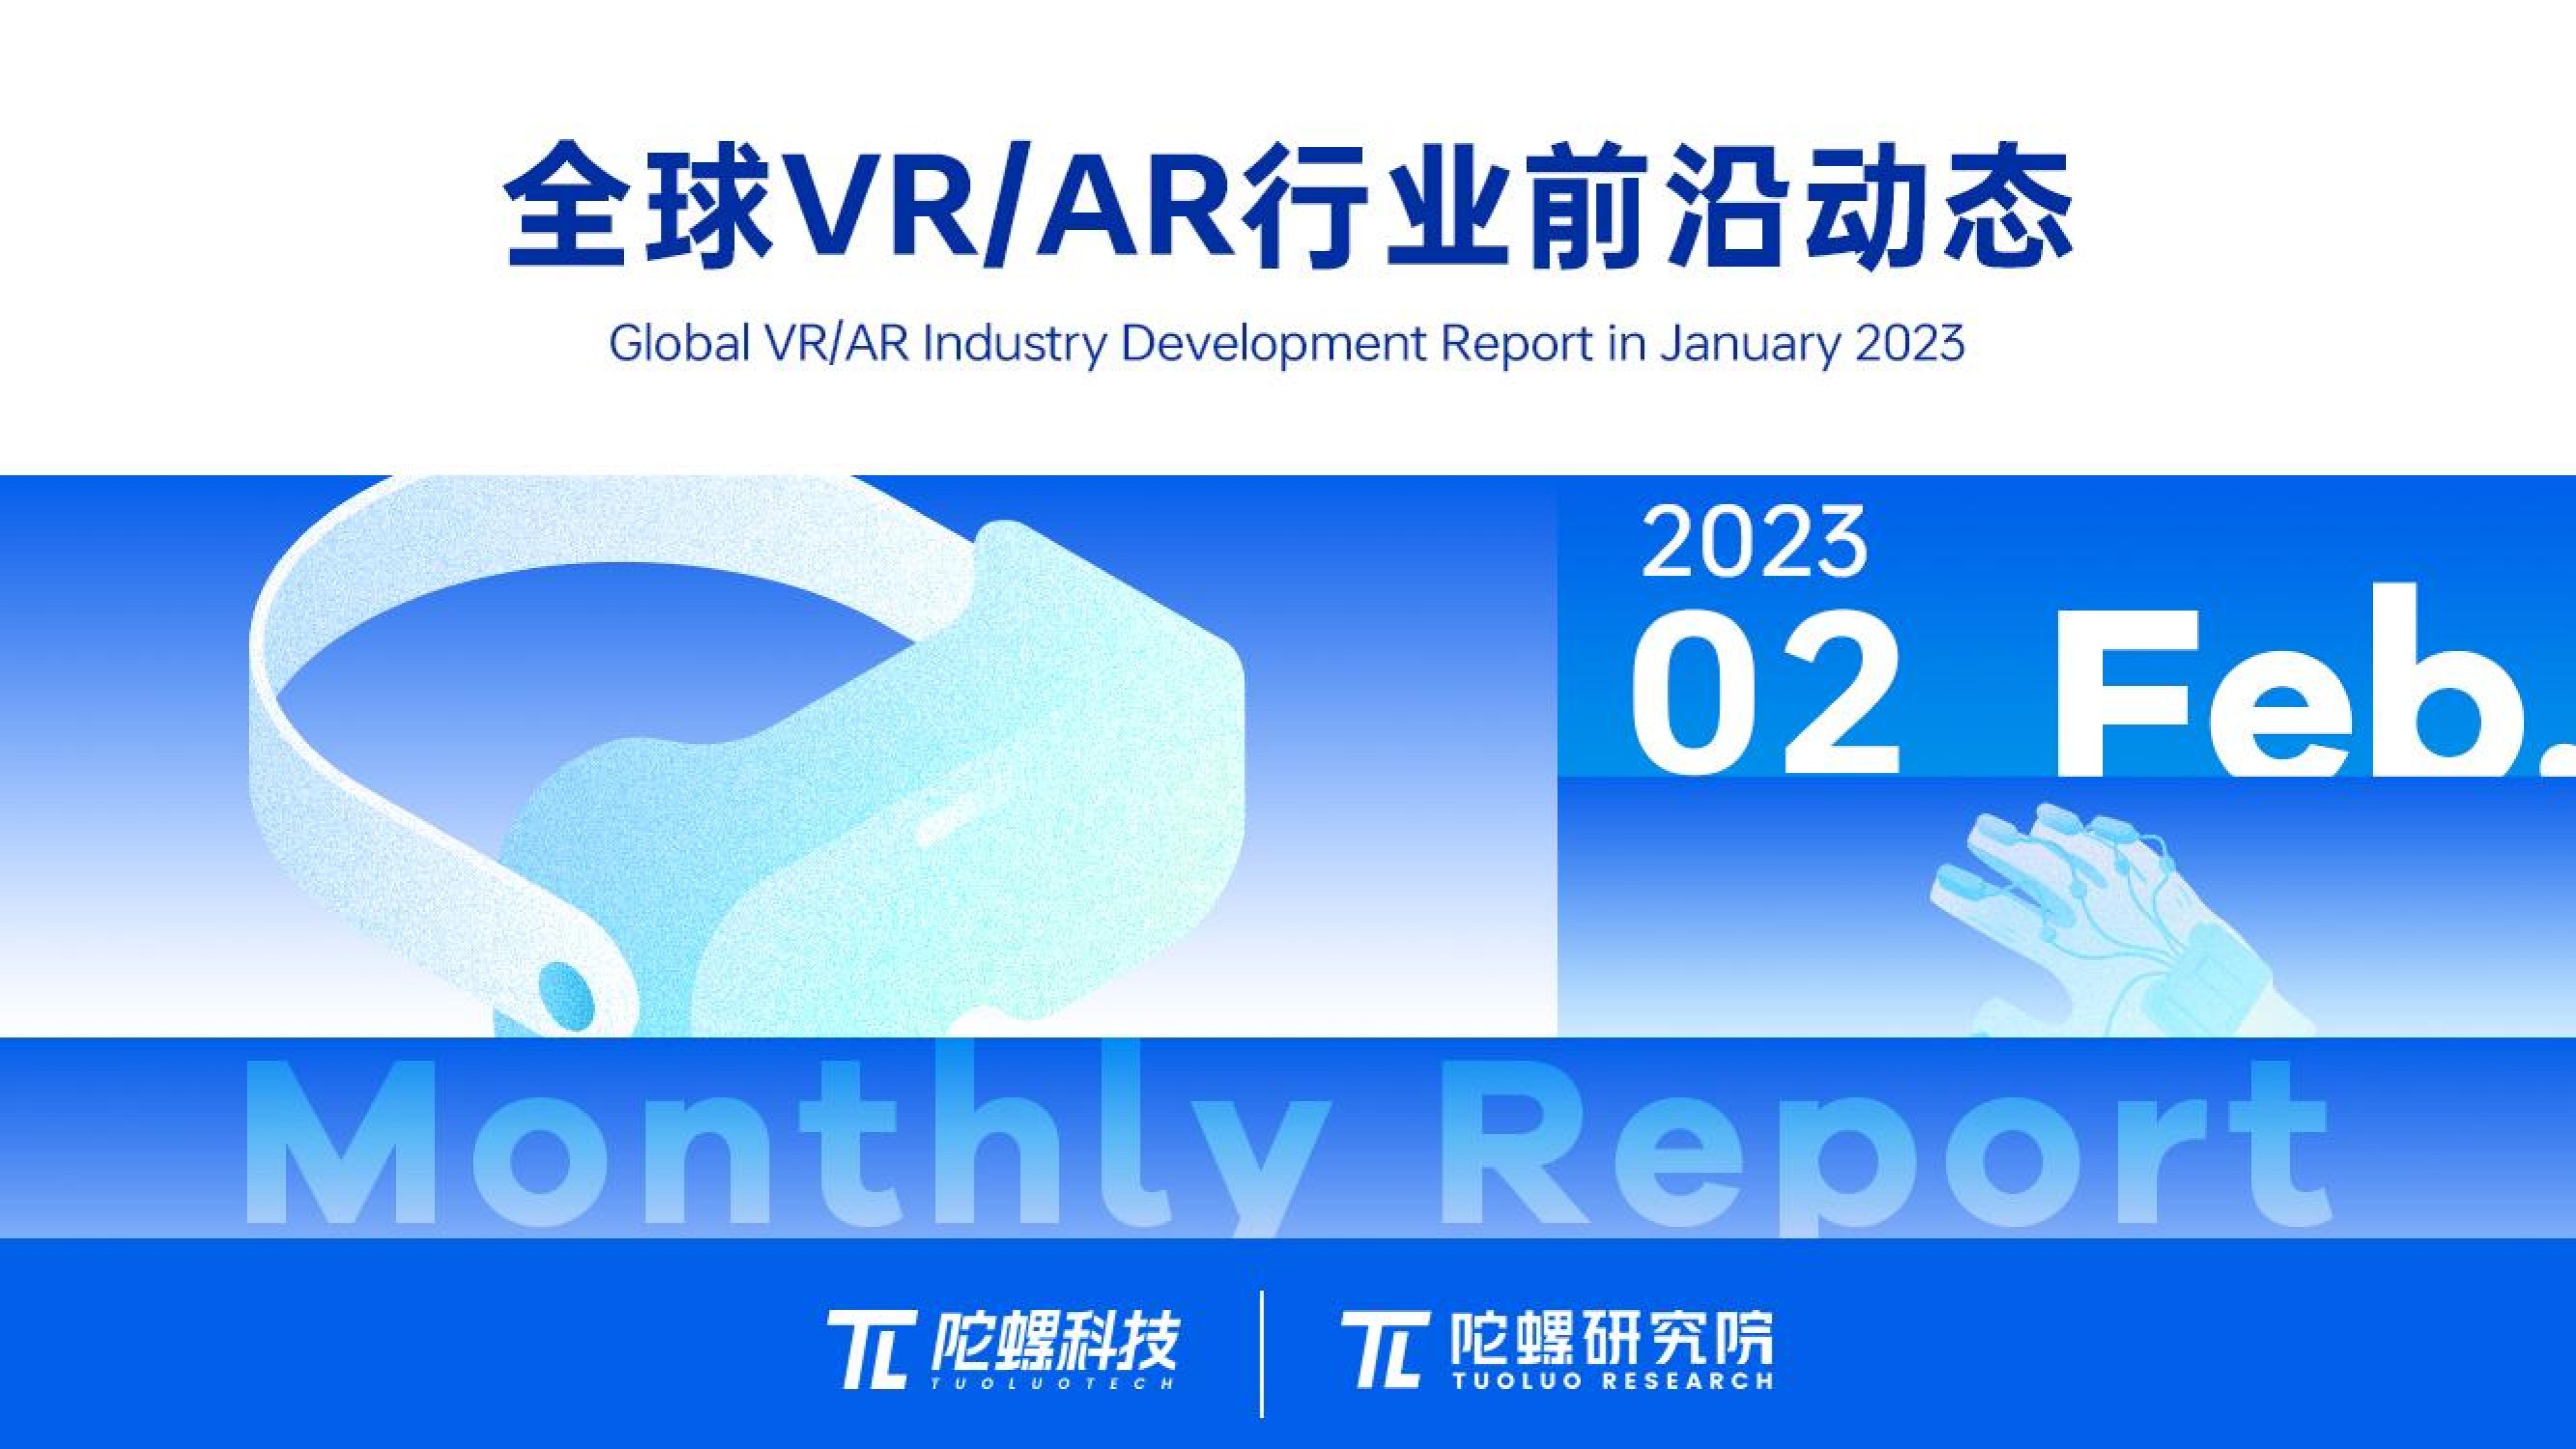 2023年2月VR/AR行业月报 | VR陀螺